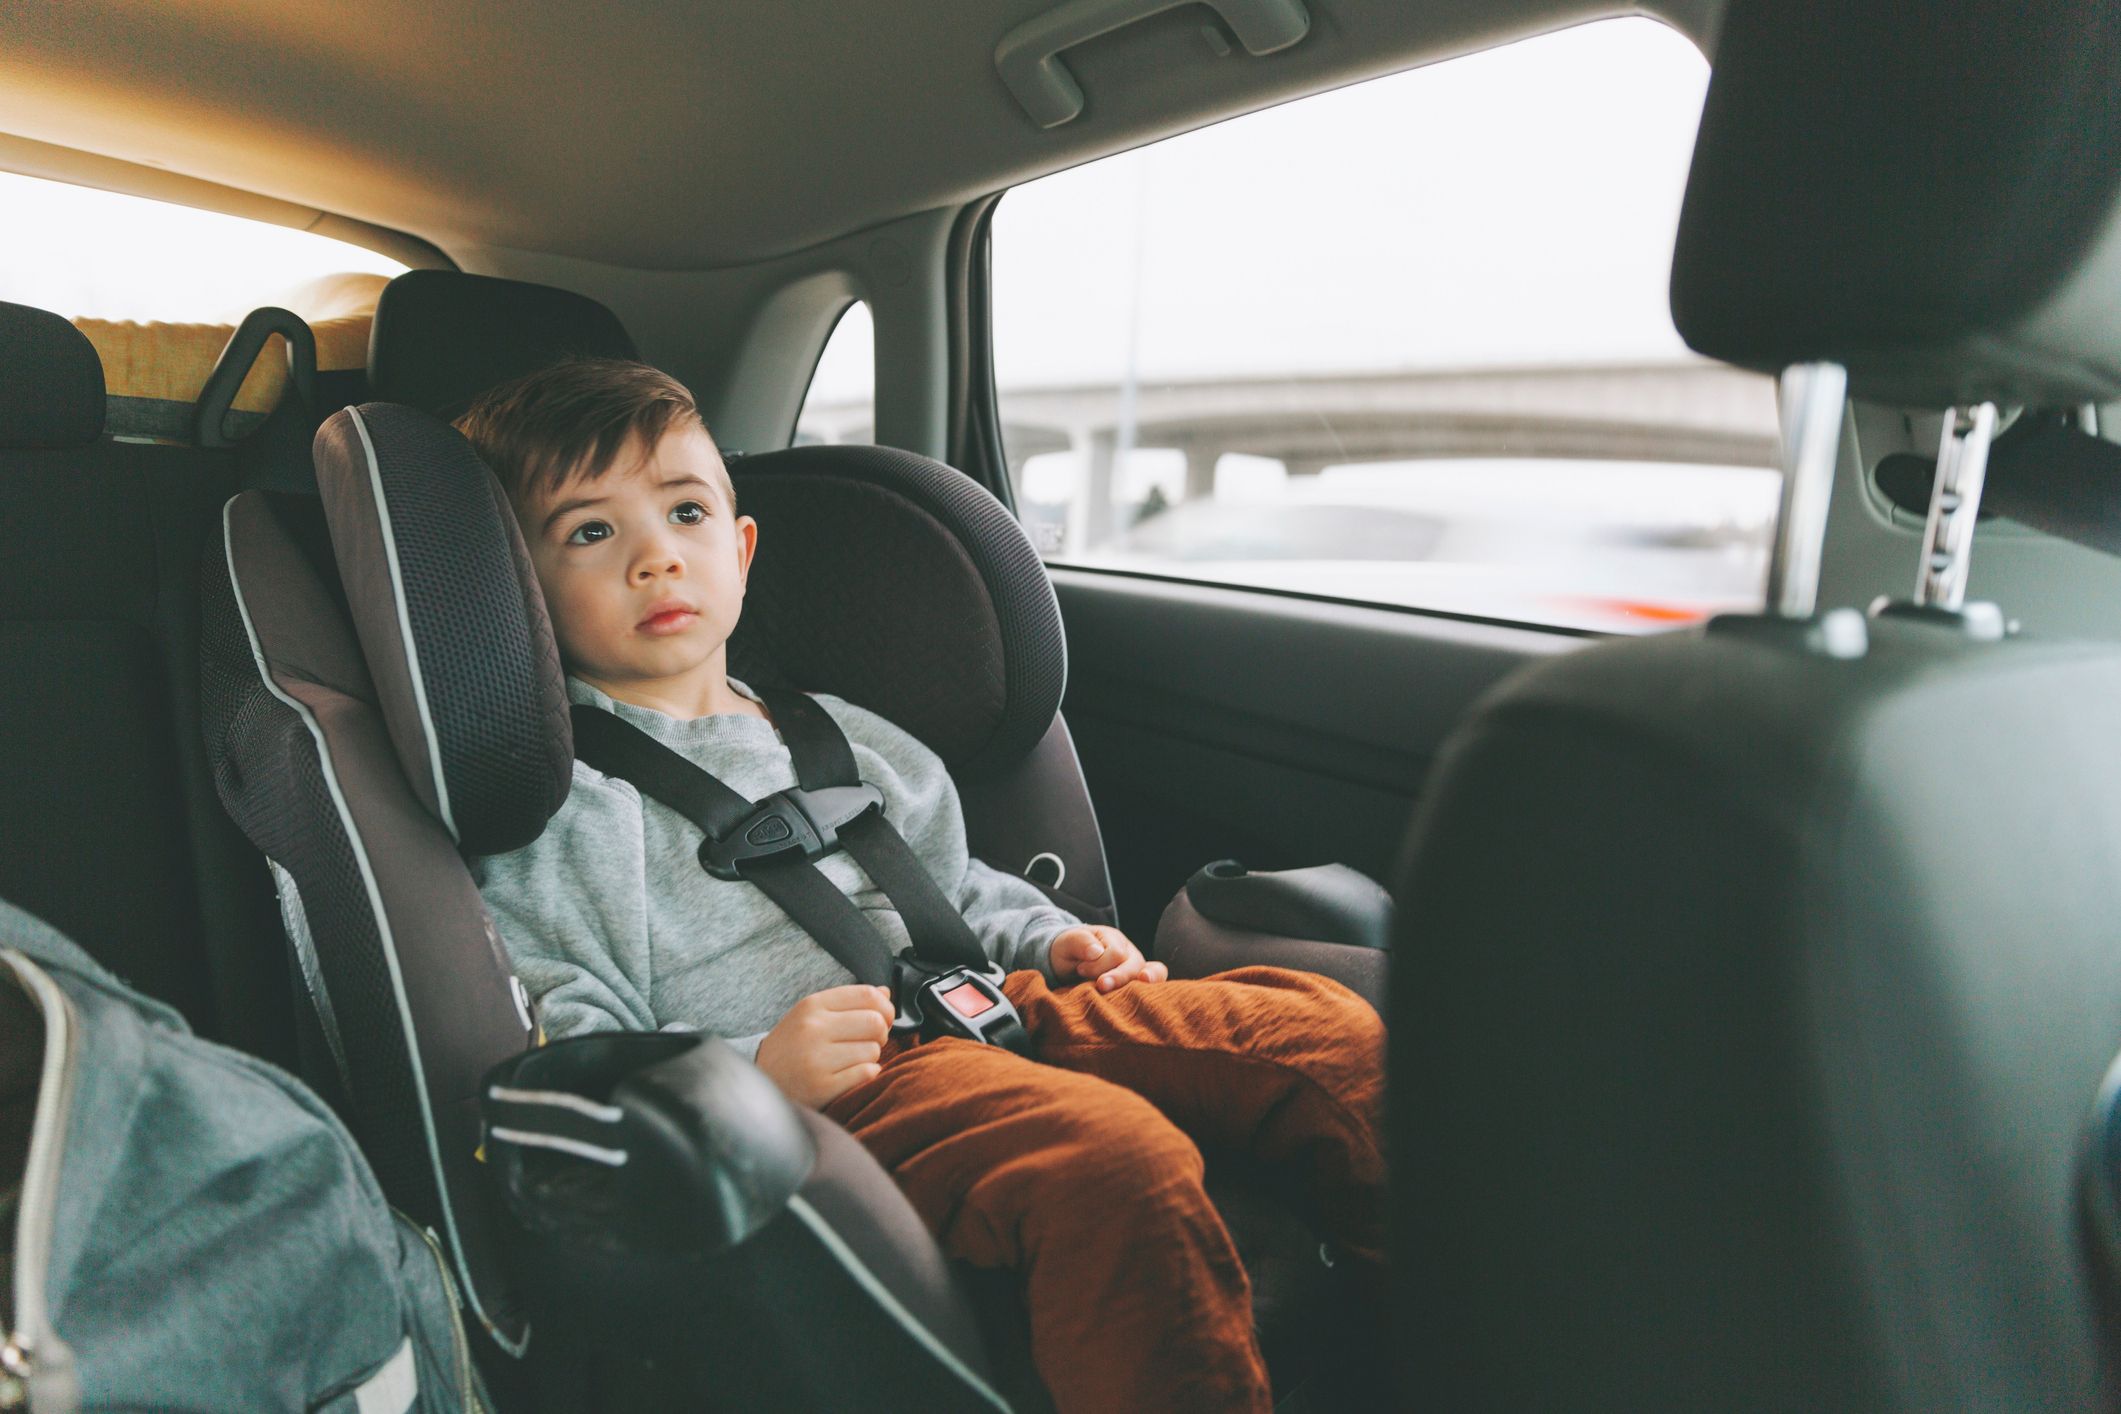 Quel siège auto choisir pour enfant de 6 ans ? Nos conseils